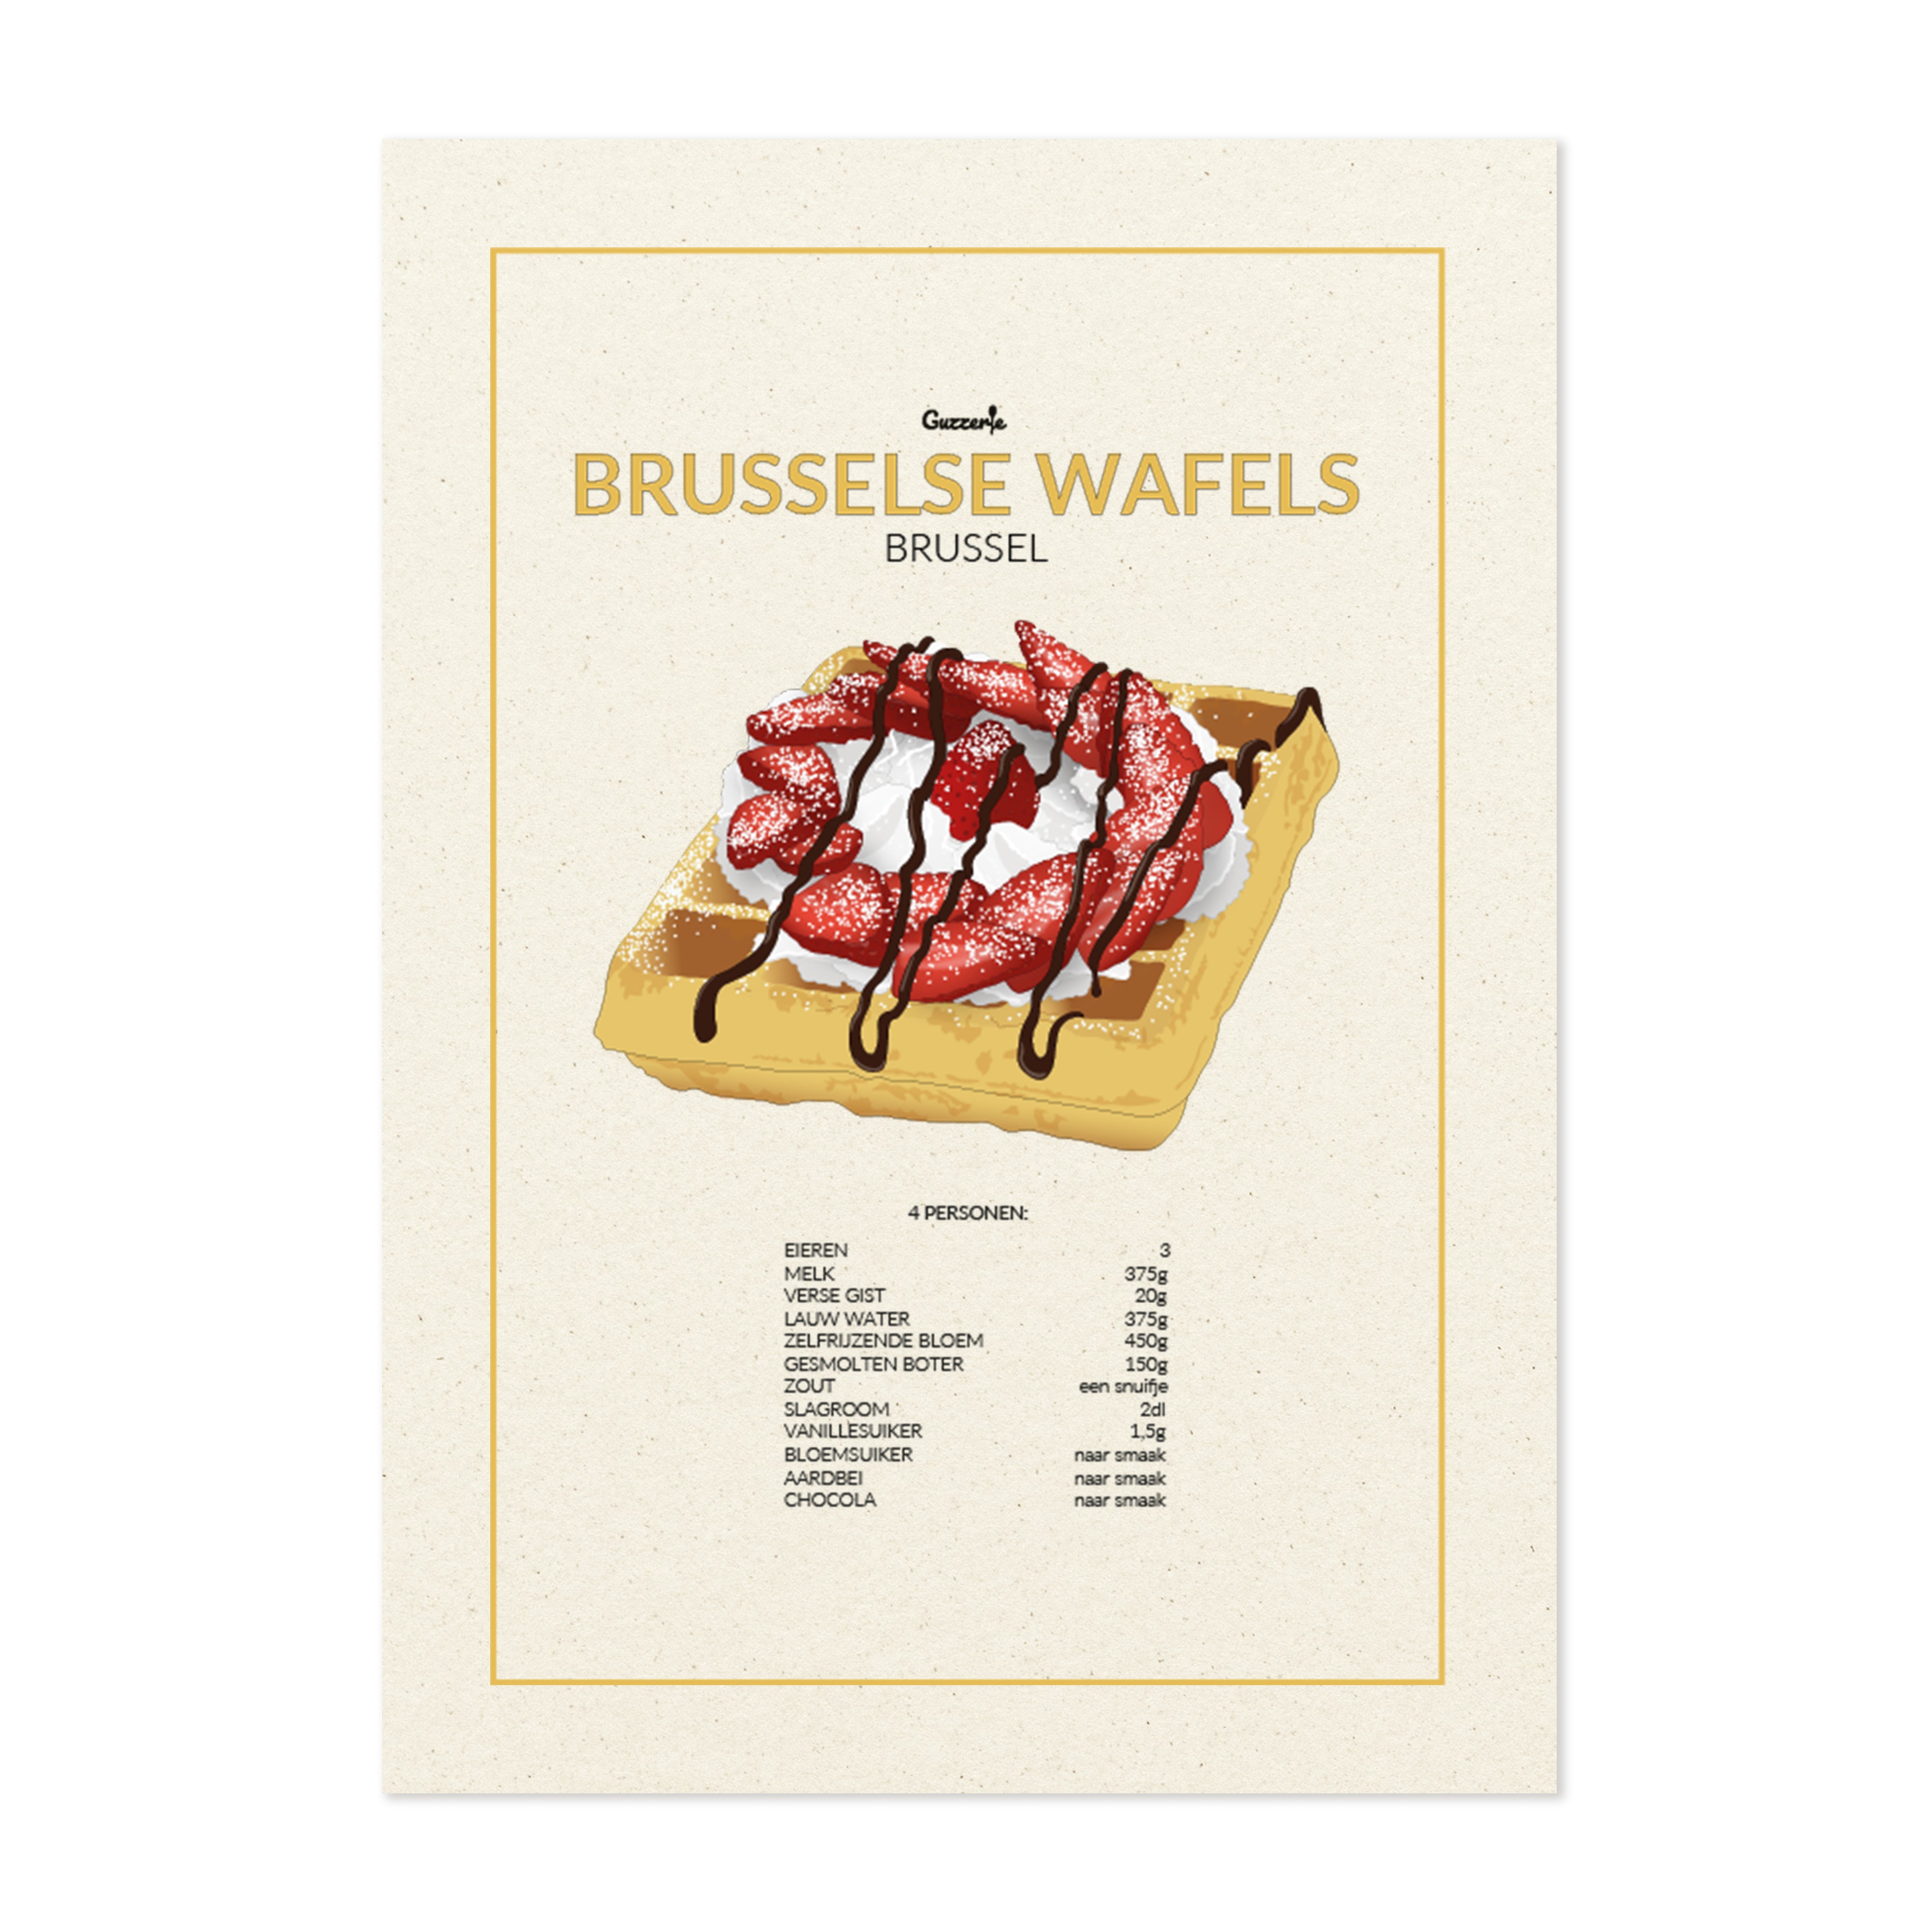 Brusselse Wafels